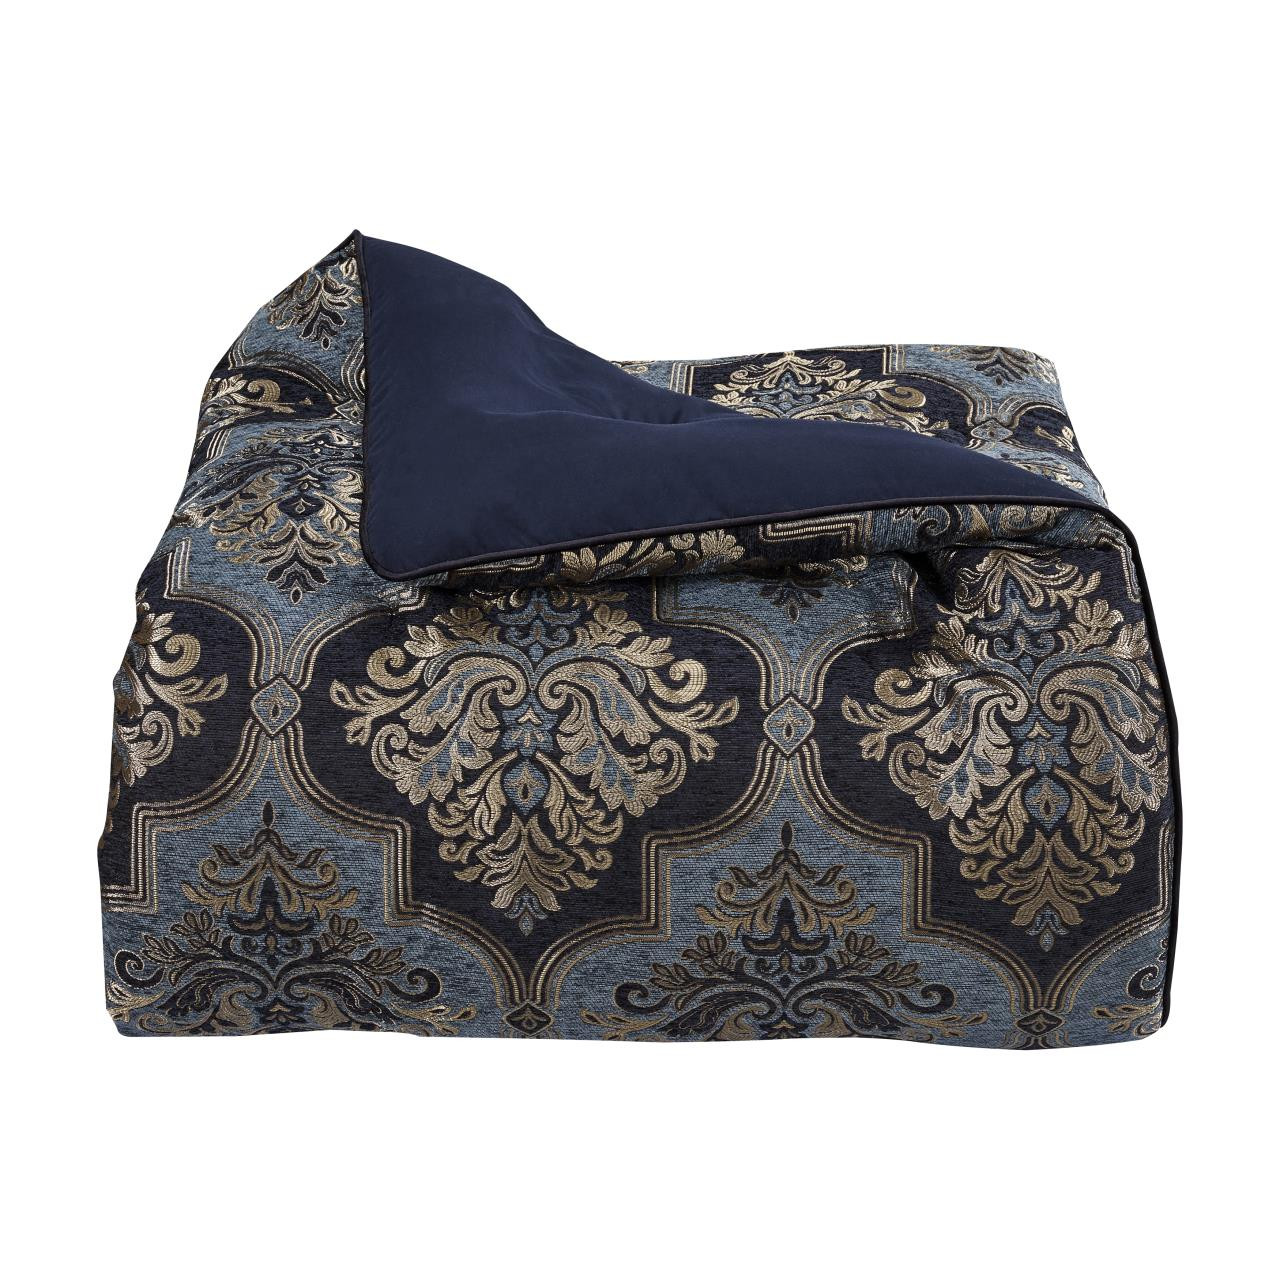 Middlebury Indigo Comforter Collection -